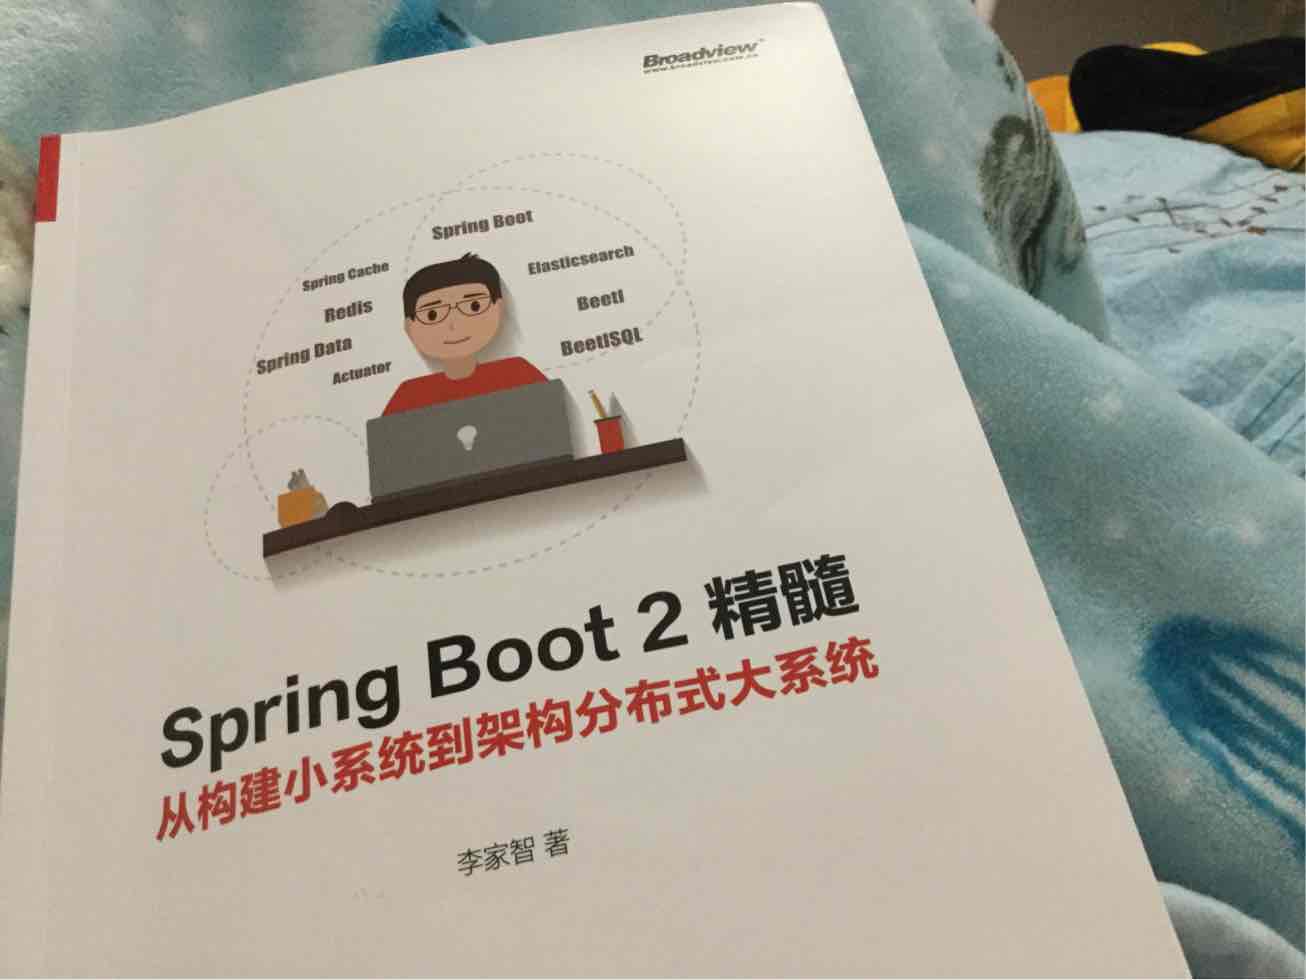 真的建议学习Springboot就不要买书了吧。 特别是不要买这本书。没啥技术硬核 还全是作者自己写的框架的广告。    哎。  还不如看**来的实在